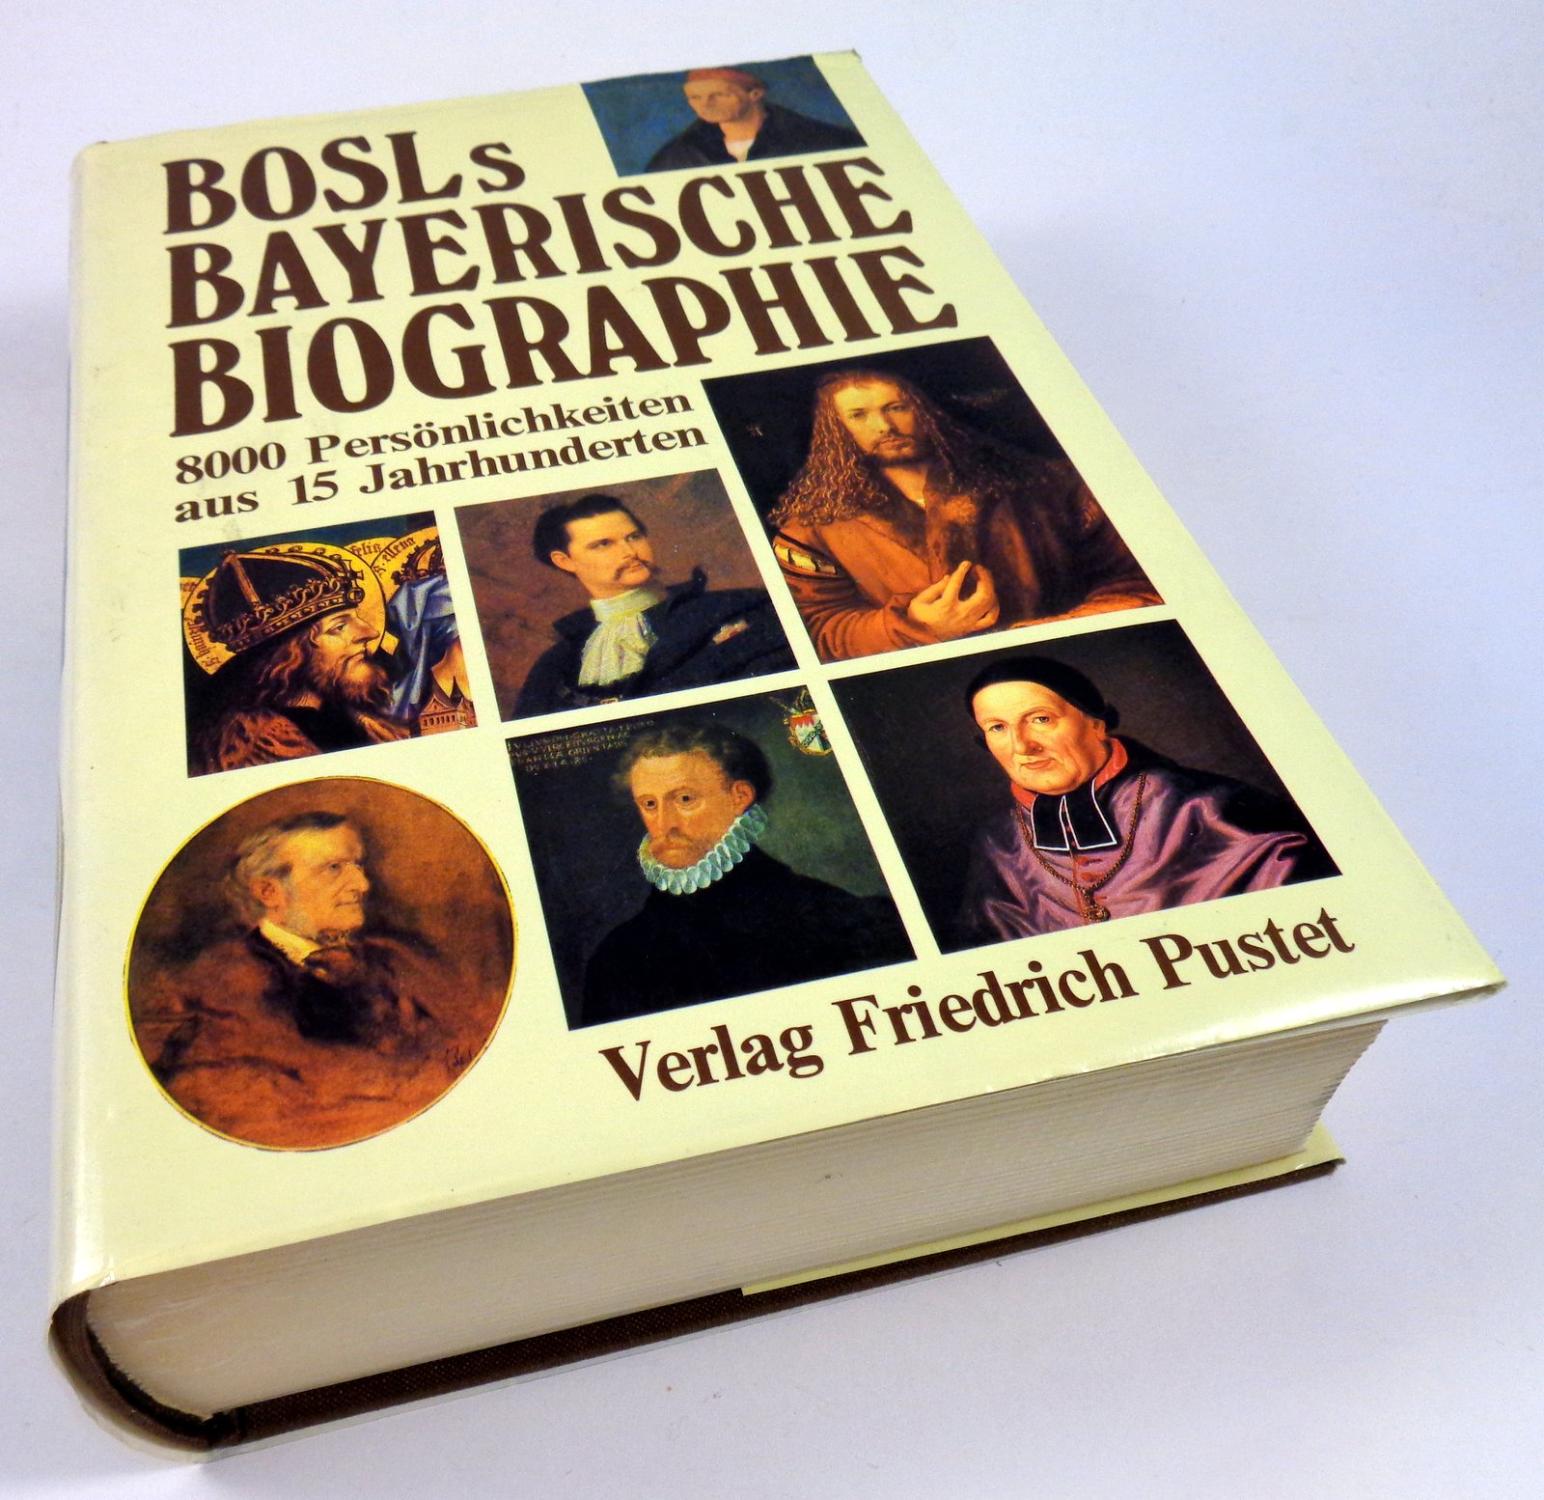 Bayerische Biographie. 8000 Persönlichkeiten aus 15 Jahrhunderten. - Bosl, Karl (Hg.)